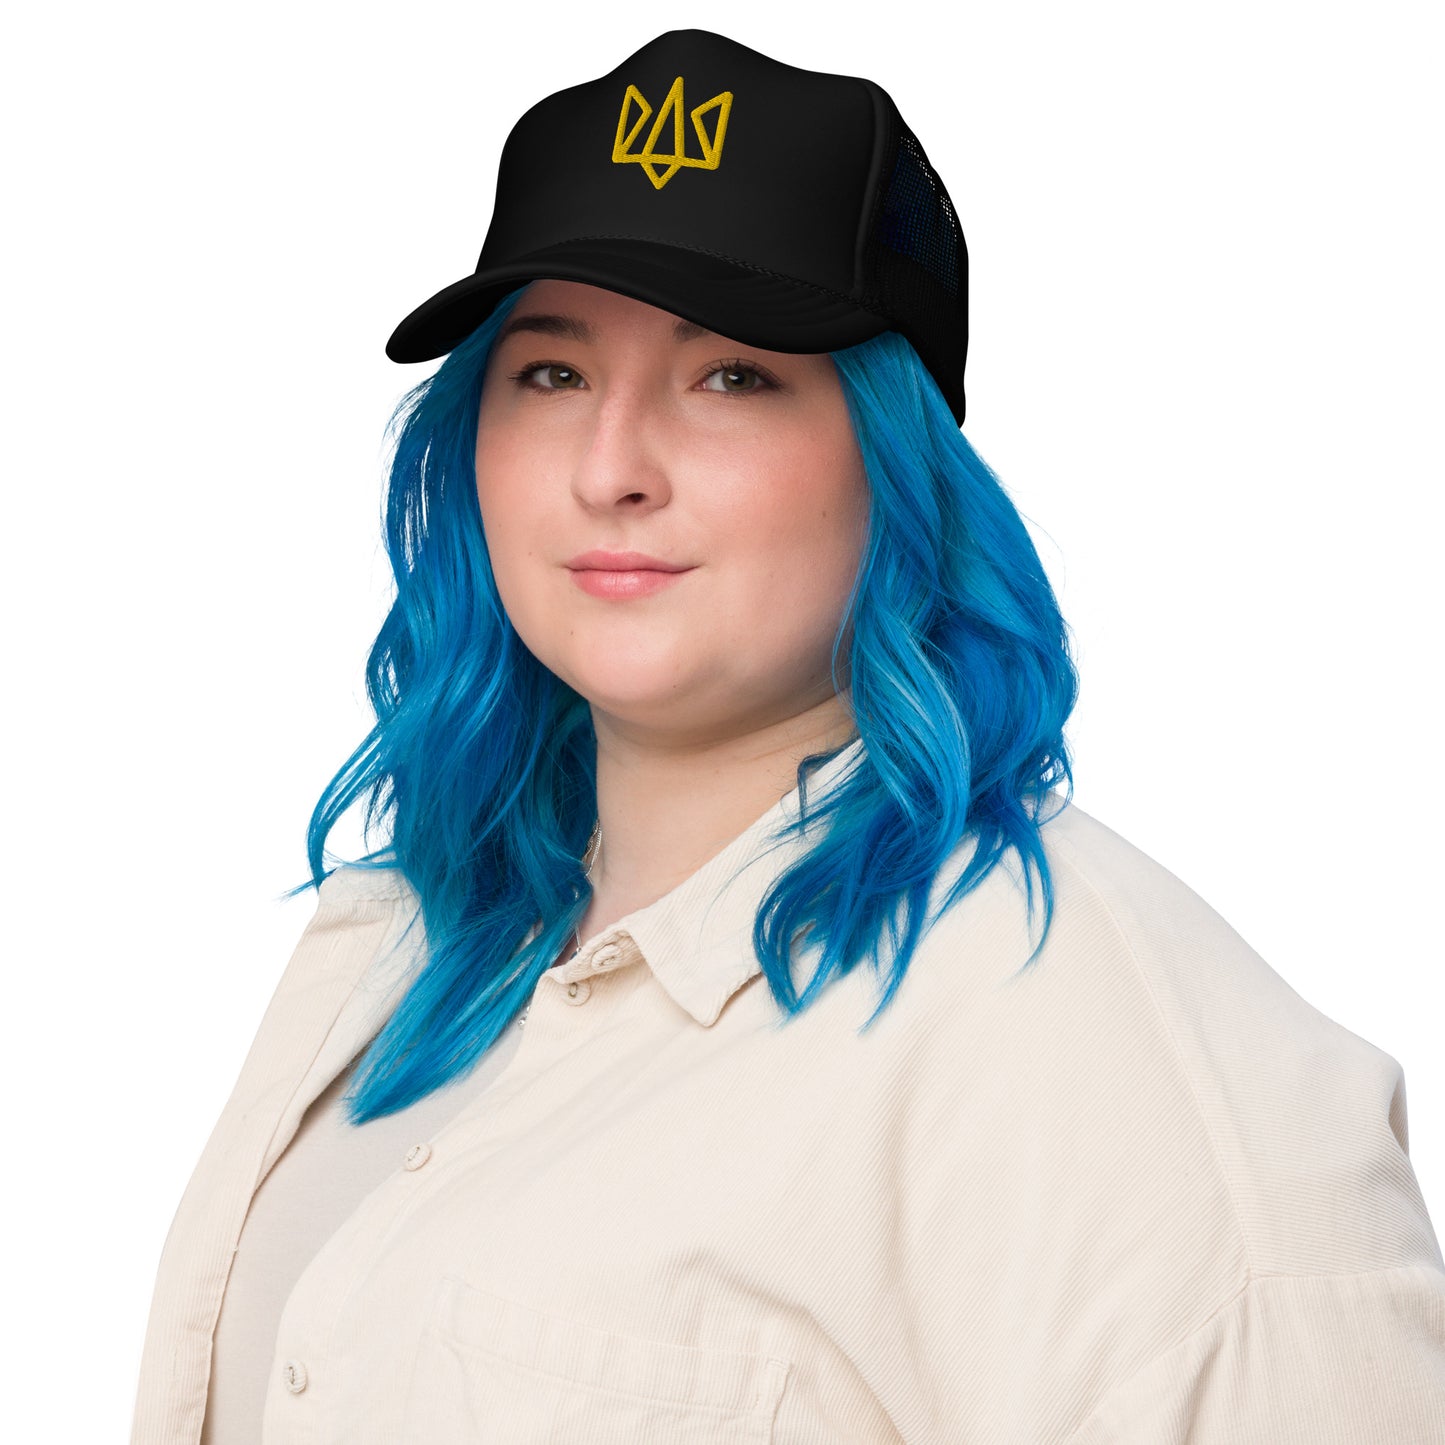 Tryzub Trucker - Black/Navy/Gold Foam trucker hat